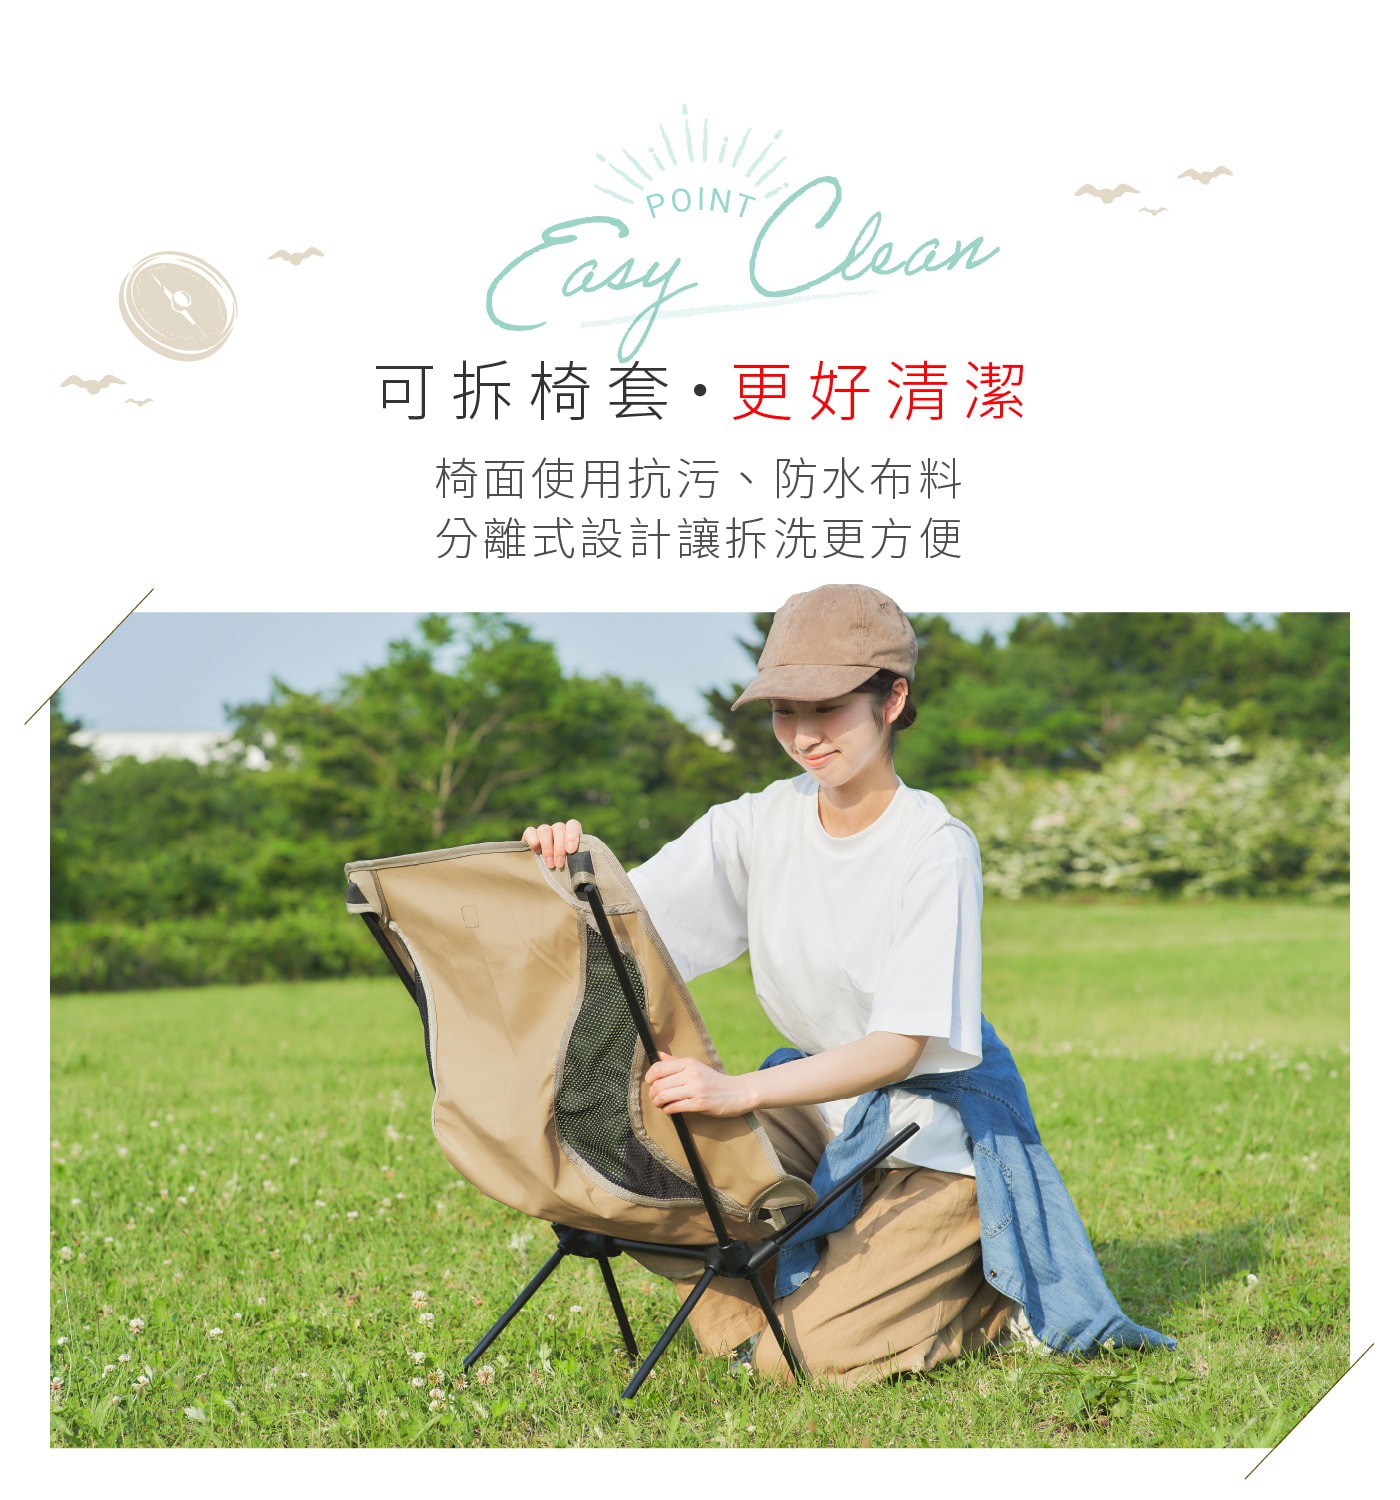 IRIS OHYAMA 露營椅 CC-LOW可拆椅套更好清潔椅面使用抗汙防水布料分離式設計讓拆洗更方便